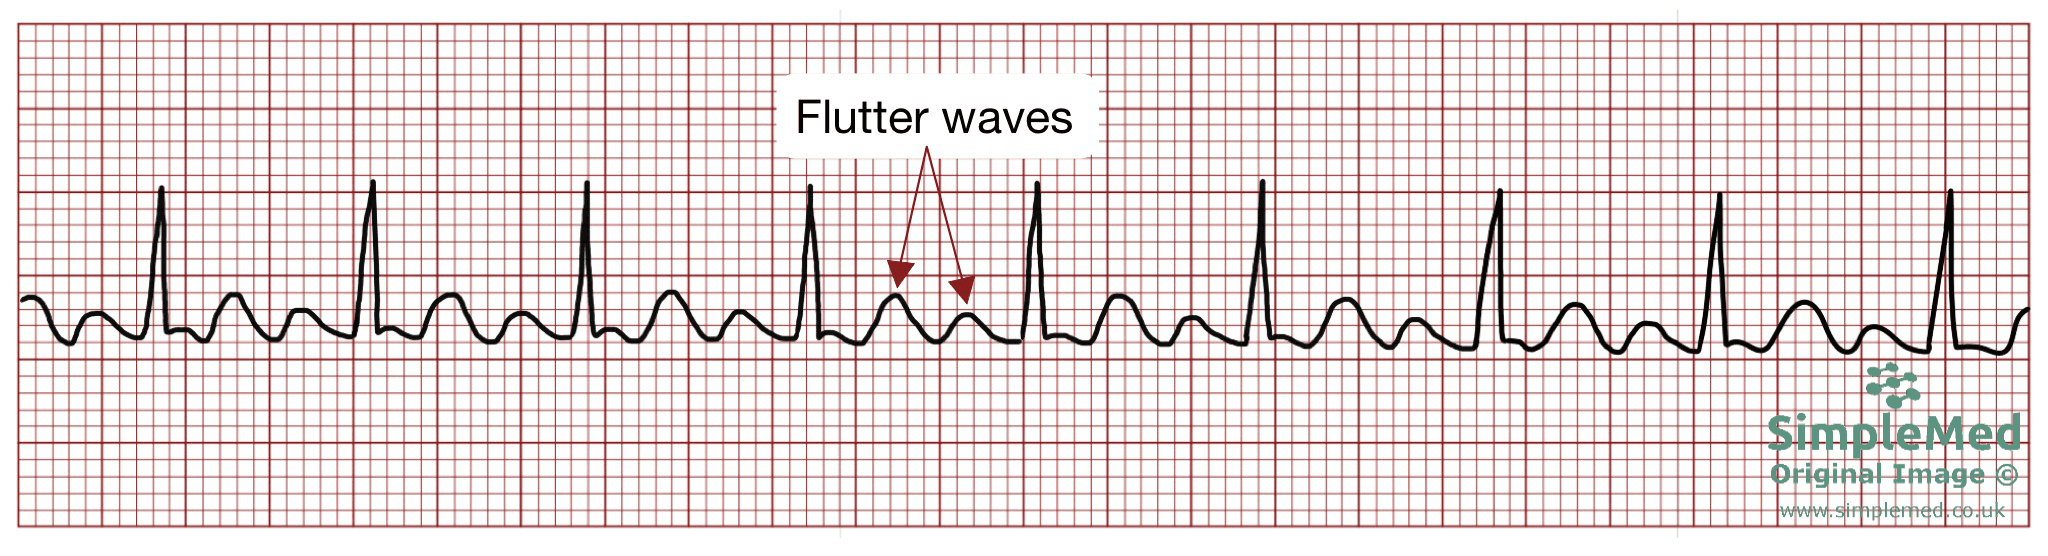 Atrial Flutter ECG electrocardiogram pathology SimpleMed